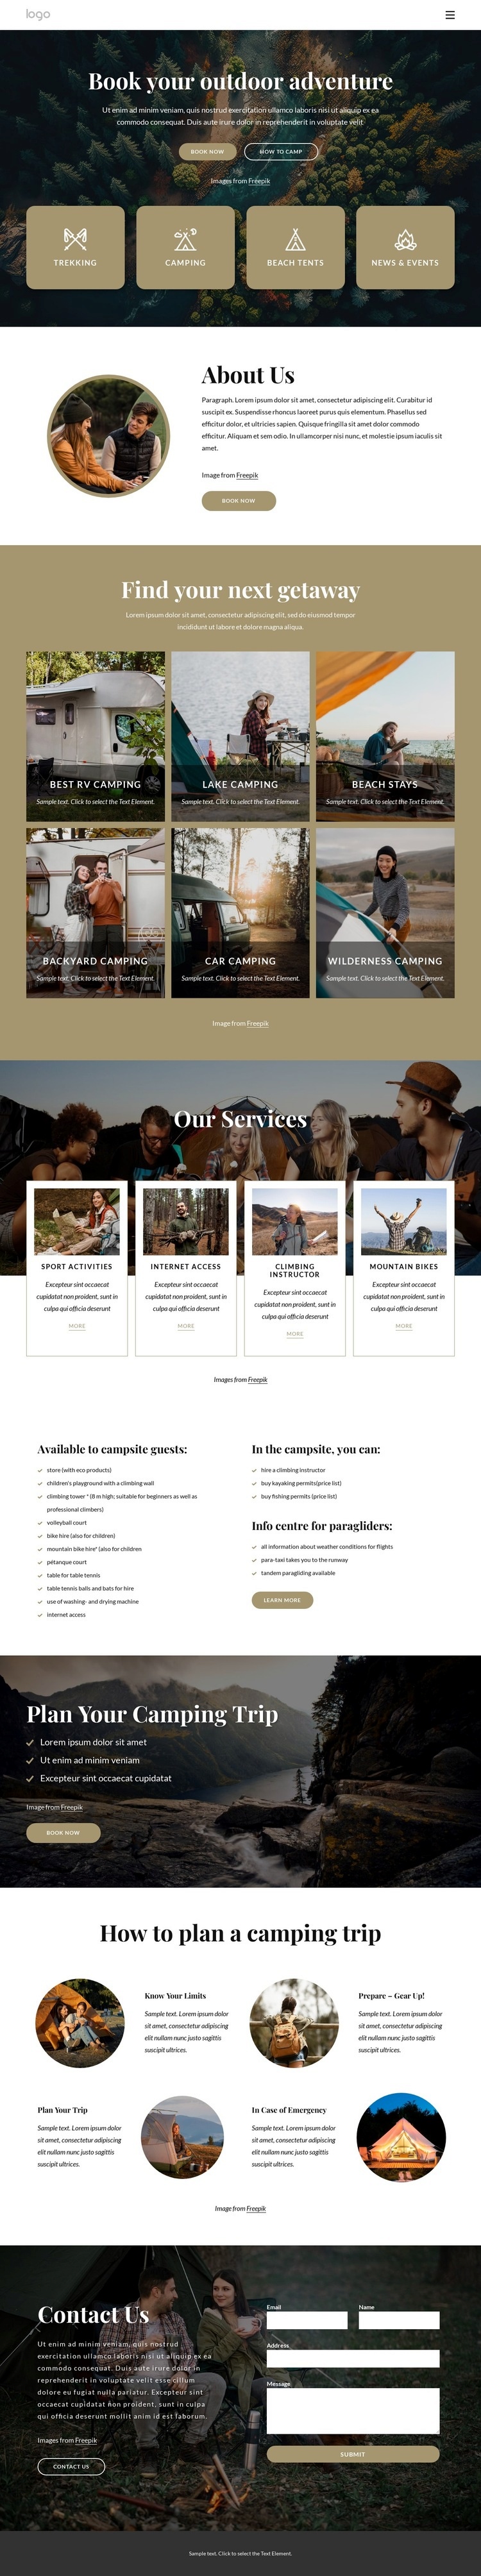 Book your outdoor adventure Homepage Design